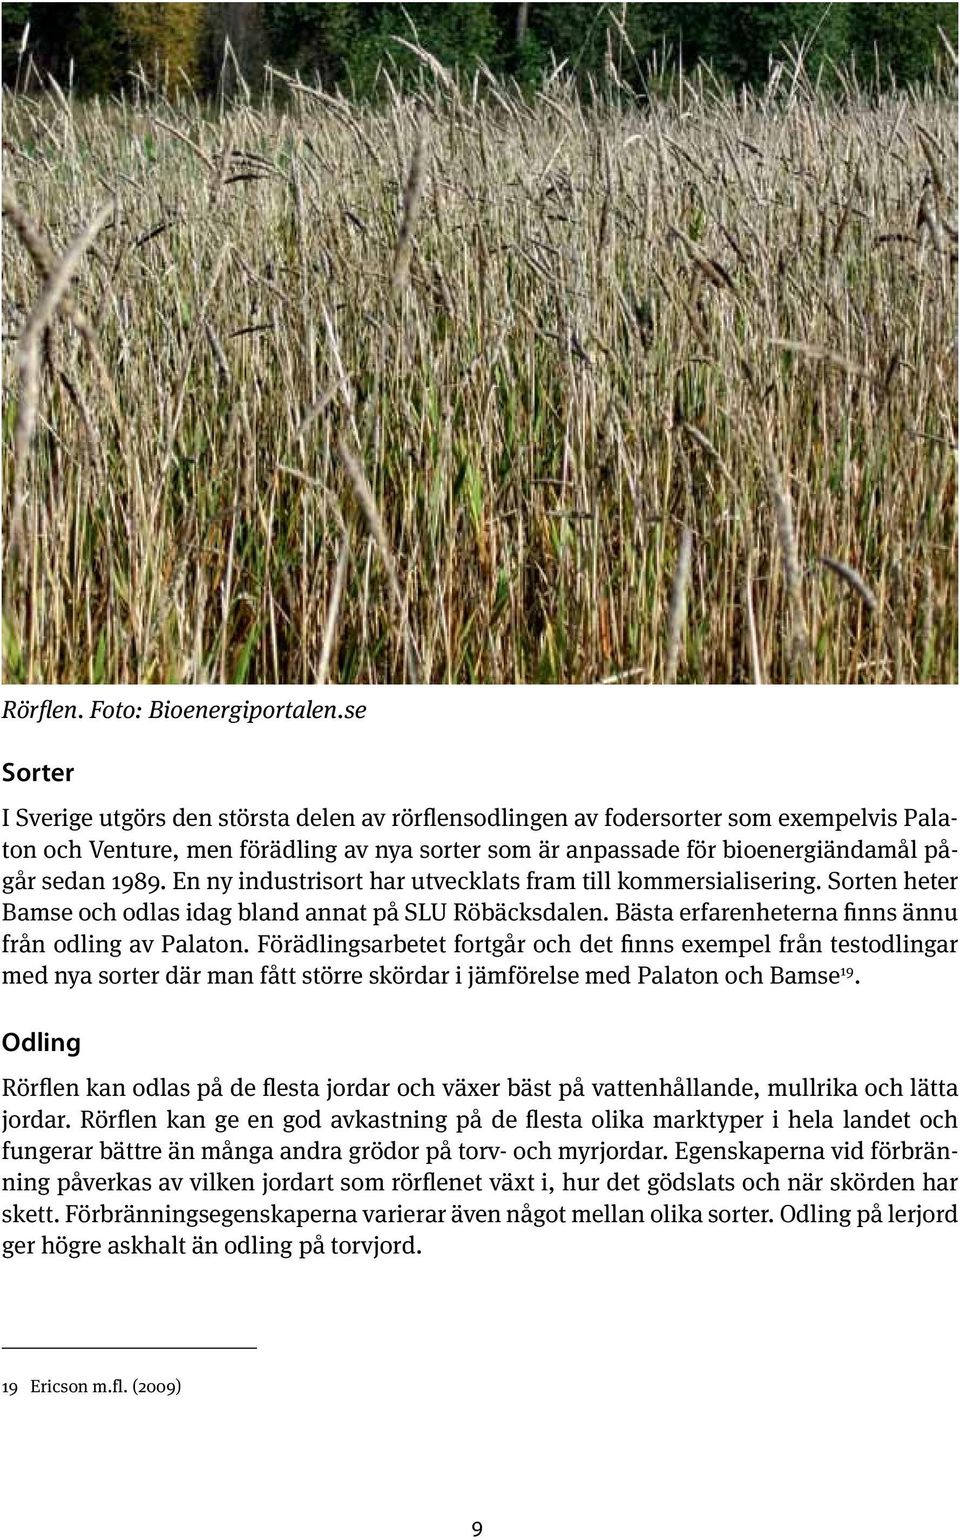 En ny industrisort har utvecklats fram till kommersialisering. Sorten heter Bamse och odlas idag bland annat på SLU Röbäcksdalen. Bästa erfarenheterna finns ännu från odling av Palaton.